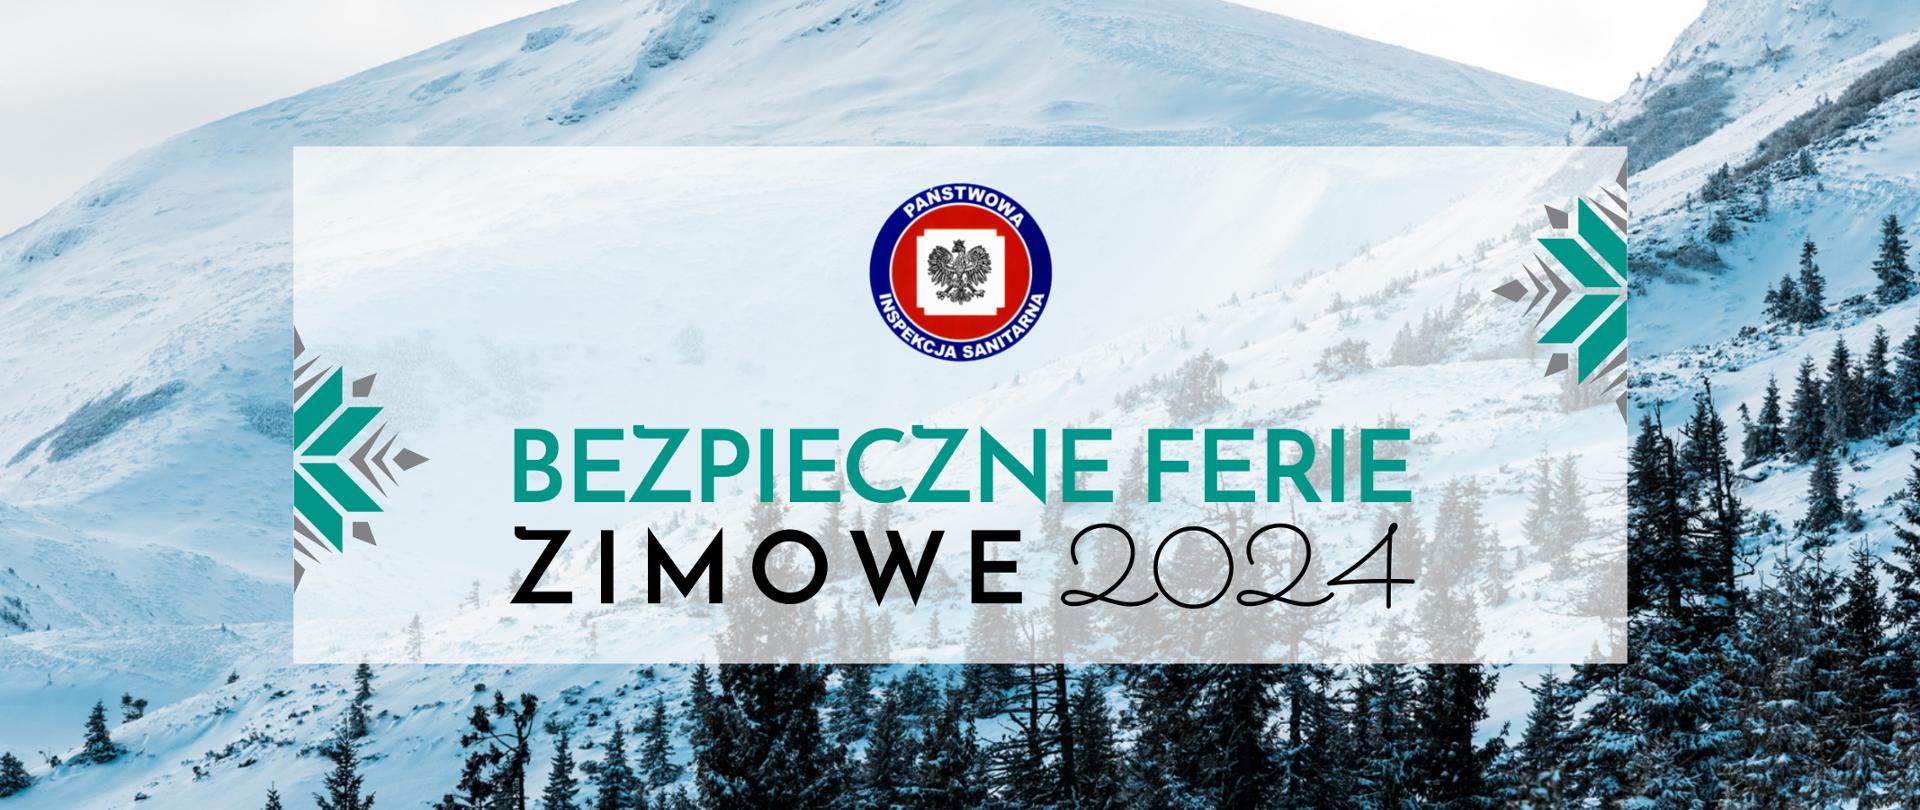 Na grafice w centrum jest logo Państwowej Inspekcji Sanitarnej, poniżej jest napisane Bezpieczne Ferie Zimowe 2024 . W tle widać ośnieżone góry.